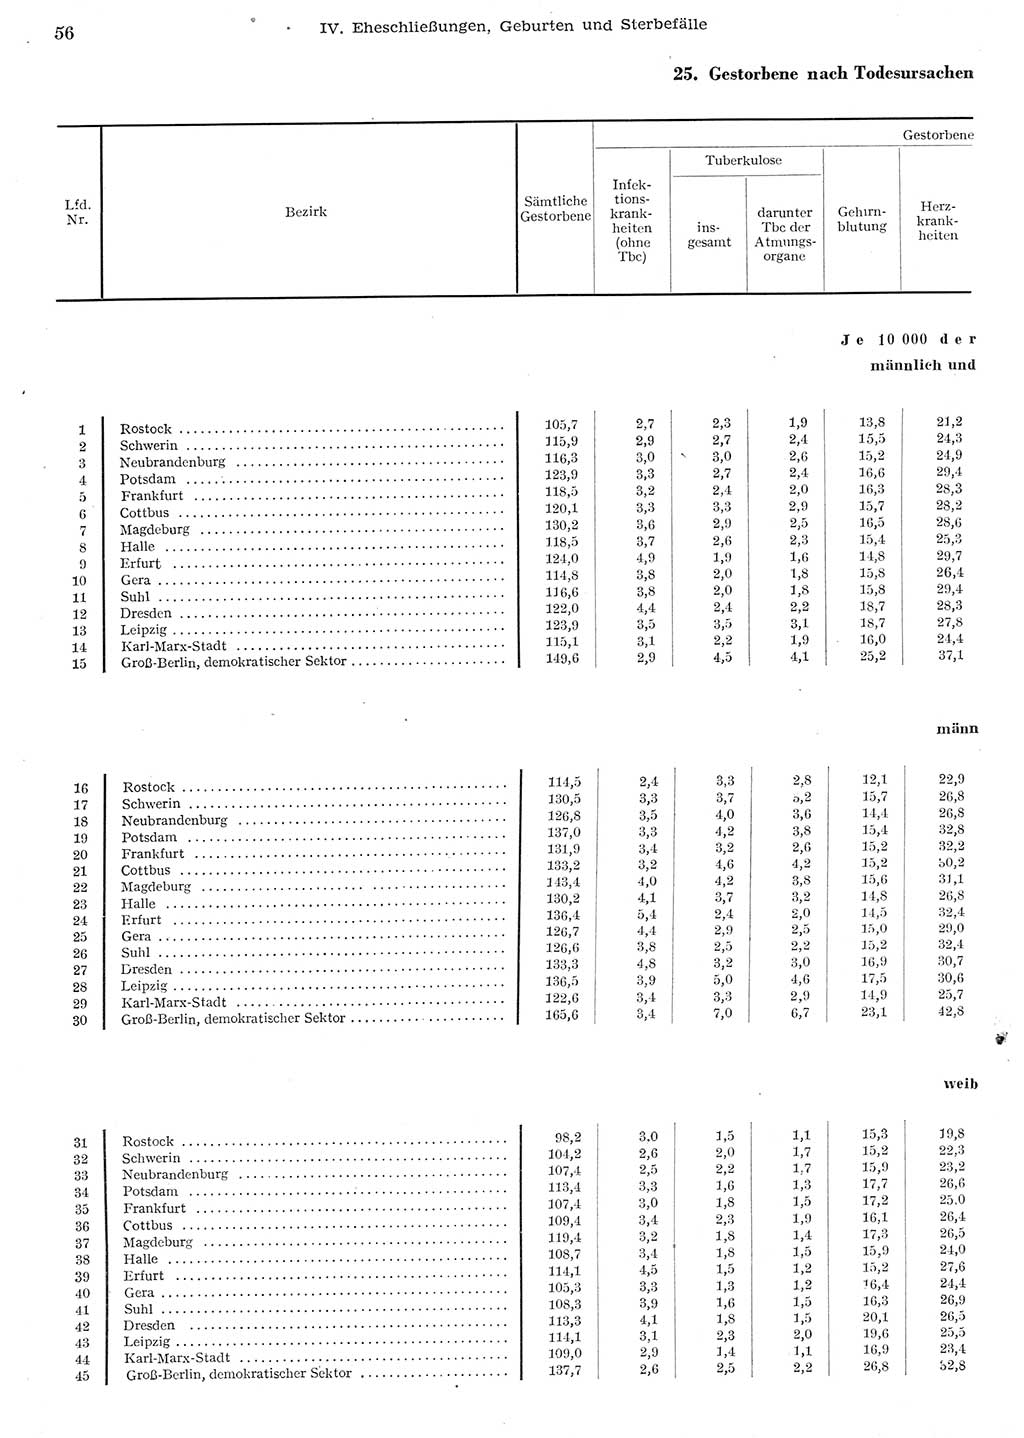 Statistisches Jahrbuch der Deutschen Demokratischen Republik (DDR) 1955, Seite 56 (Stat. Jb. DDR 1955, S. 56)